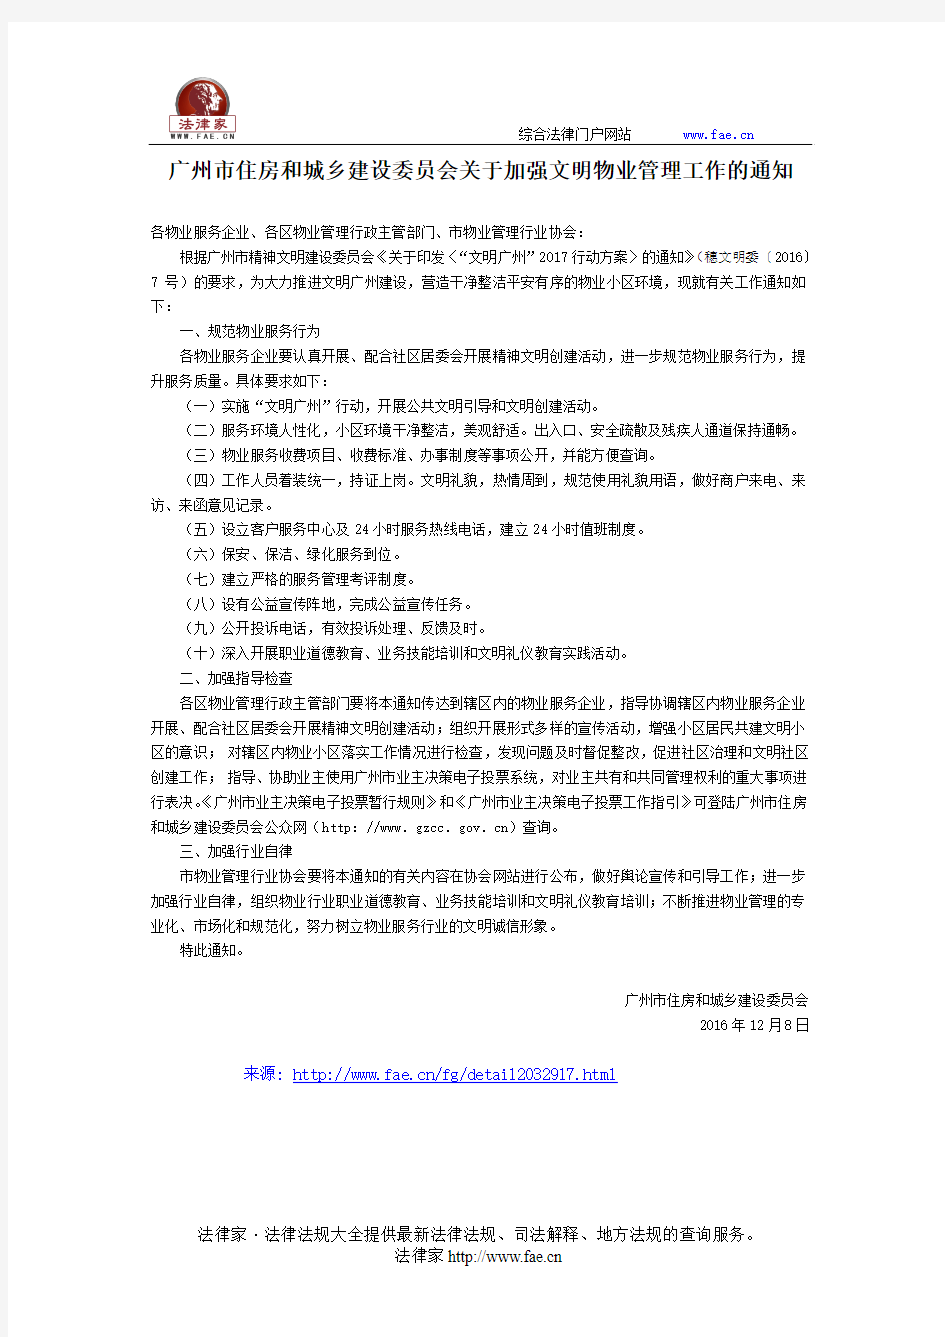 广州市住房和城乡建设委员会关于加强文明物业管理工作的通知-地方规范性文件